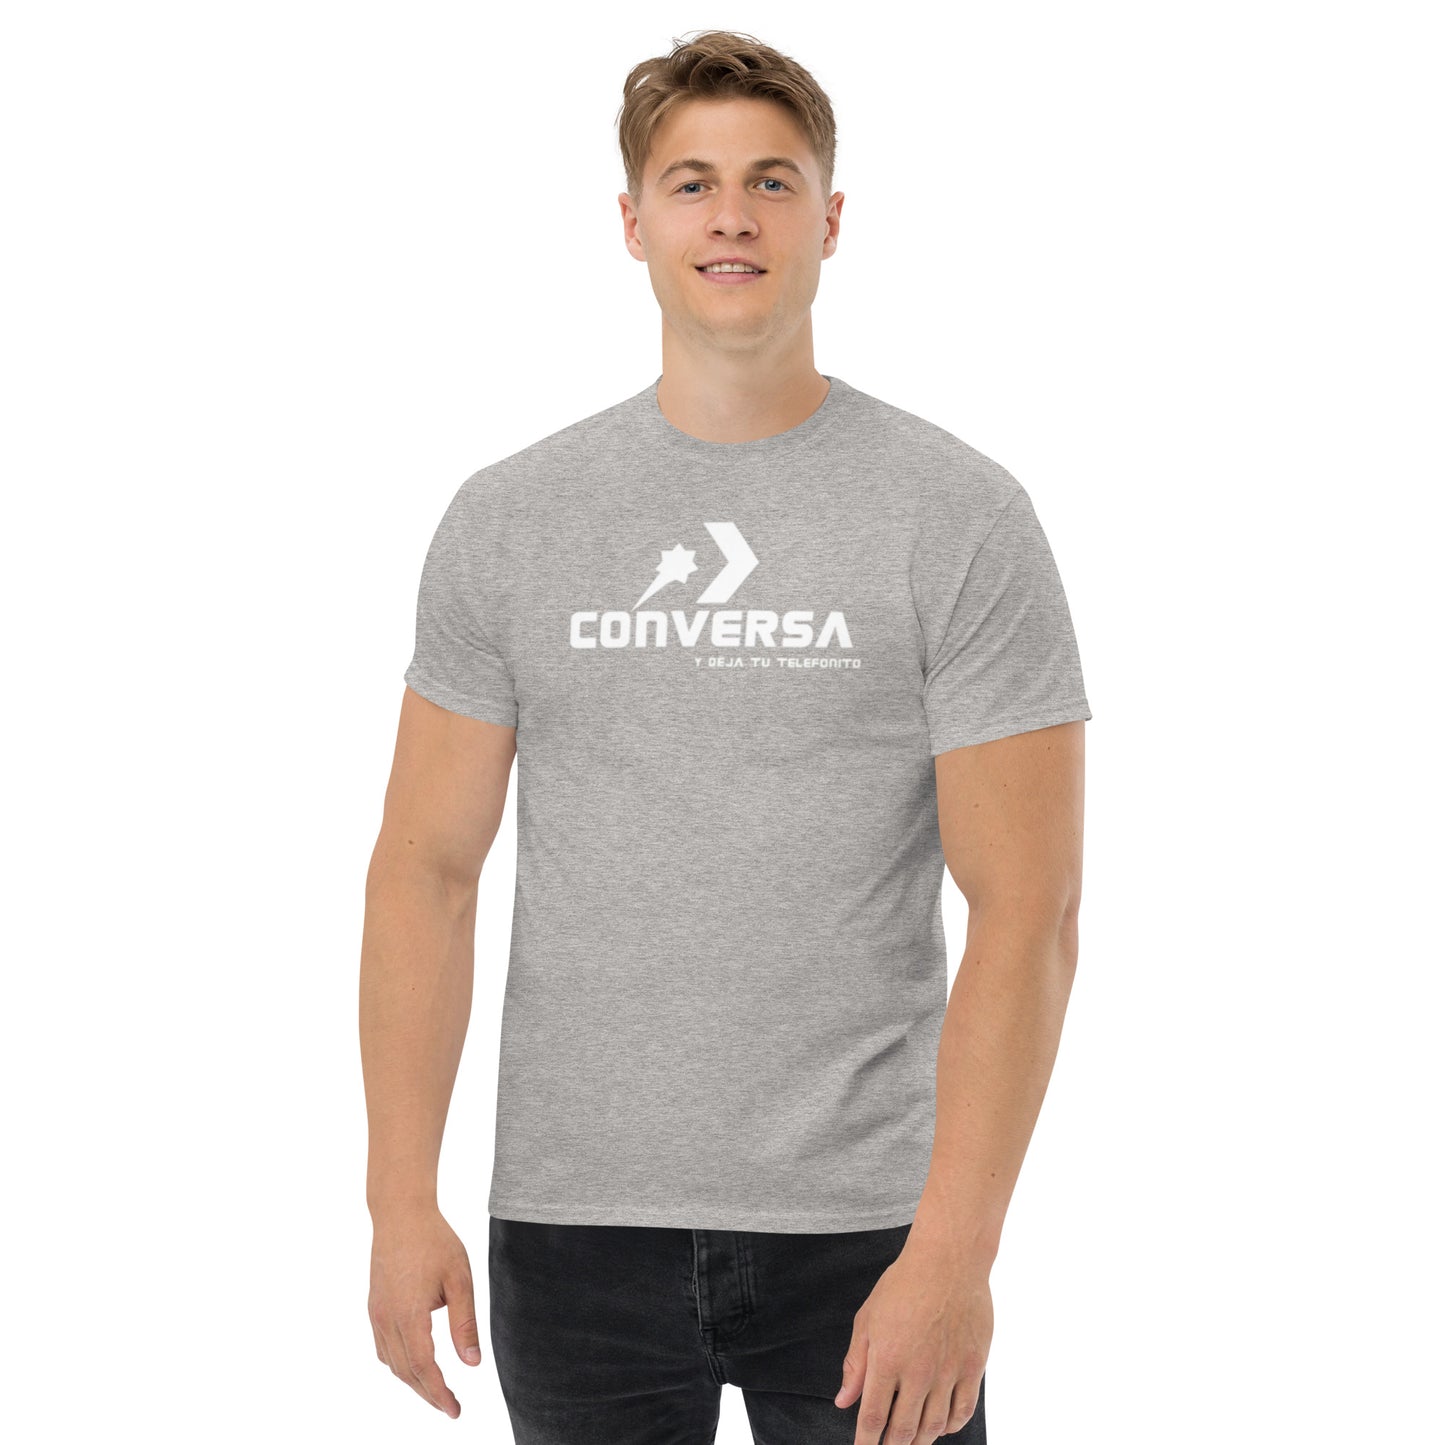 T-shirt "Converse"